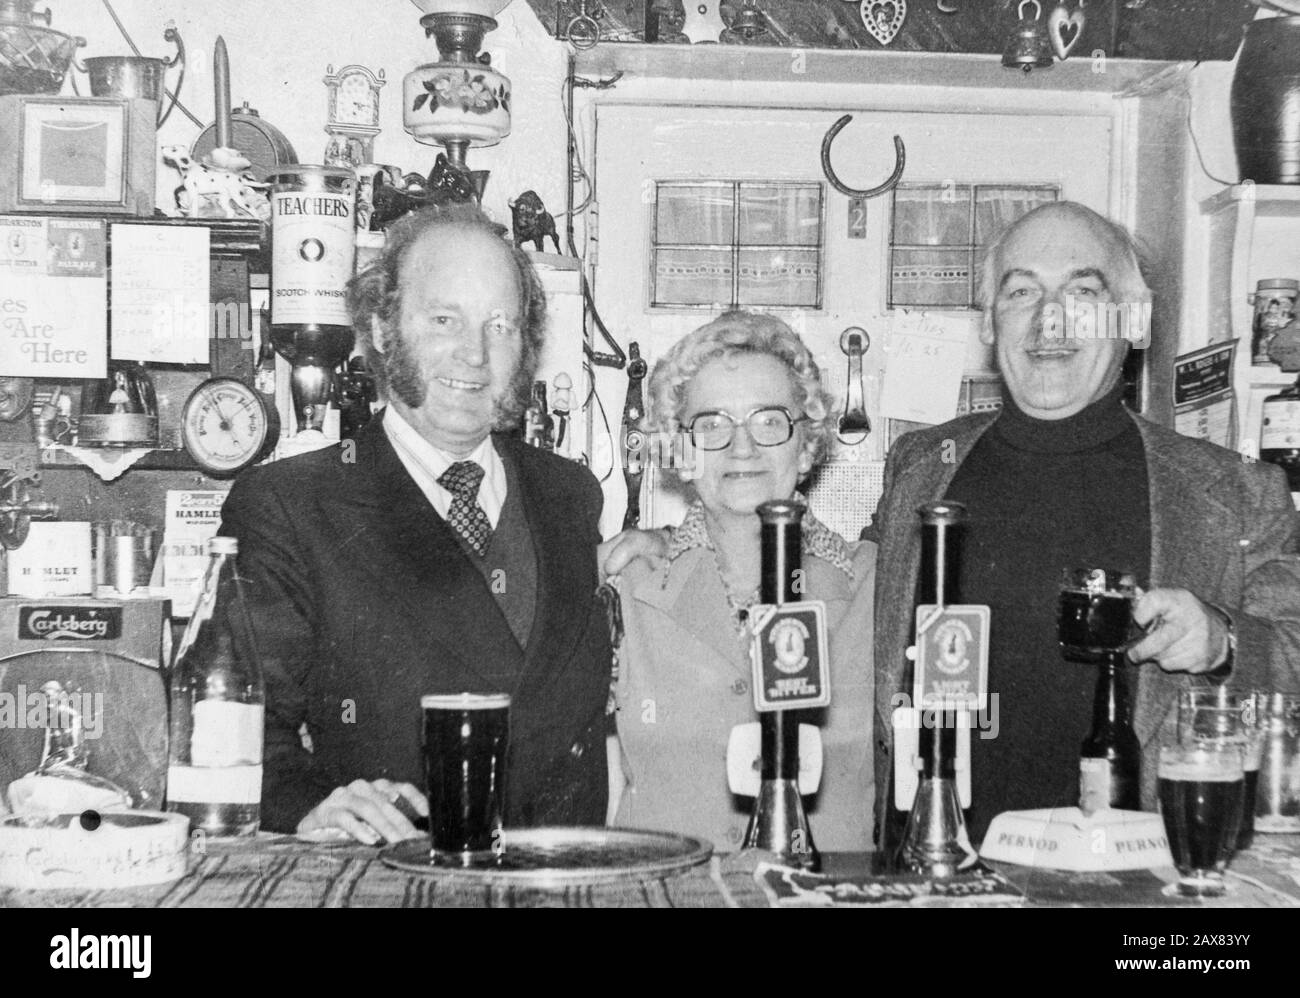 Les acteurs Emmerdale Ronald Magill (à gauche) et Arthur Pentelow (à droite) derrière le bar du pub White Bear à Masham, dans le Yorkshire, avec la landlady Mary Gray. Banque D'Images